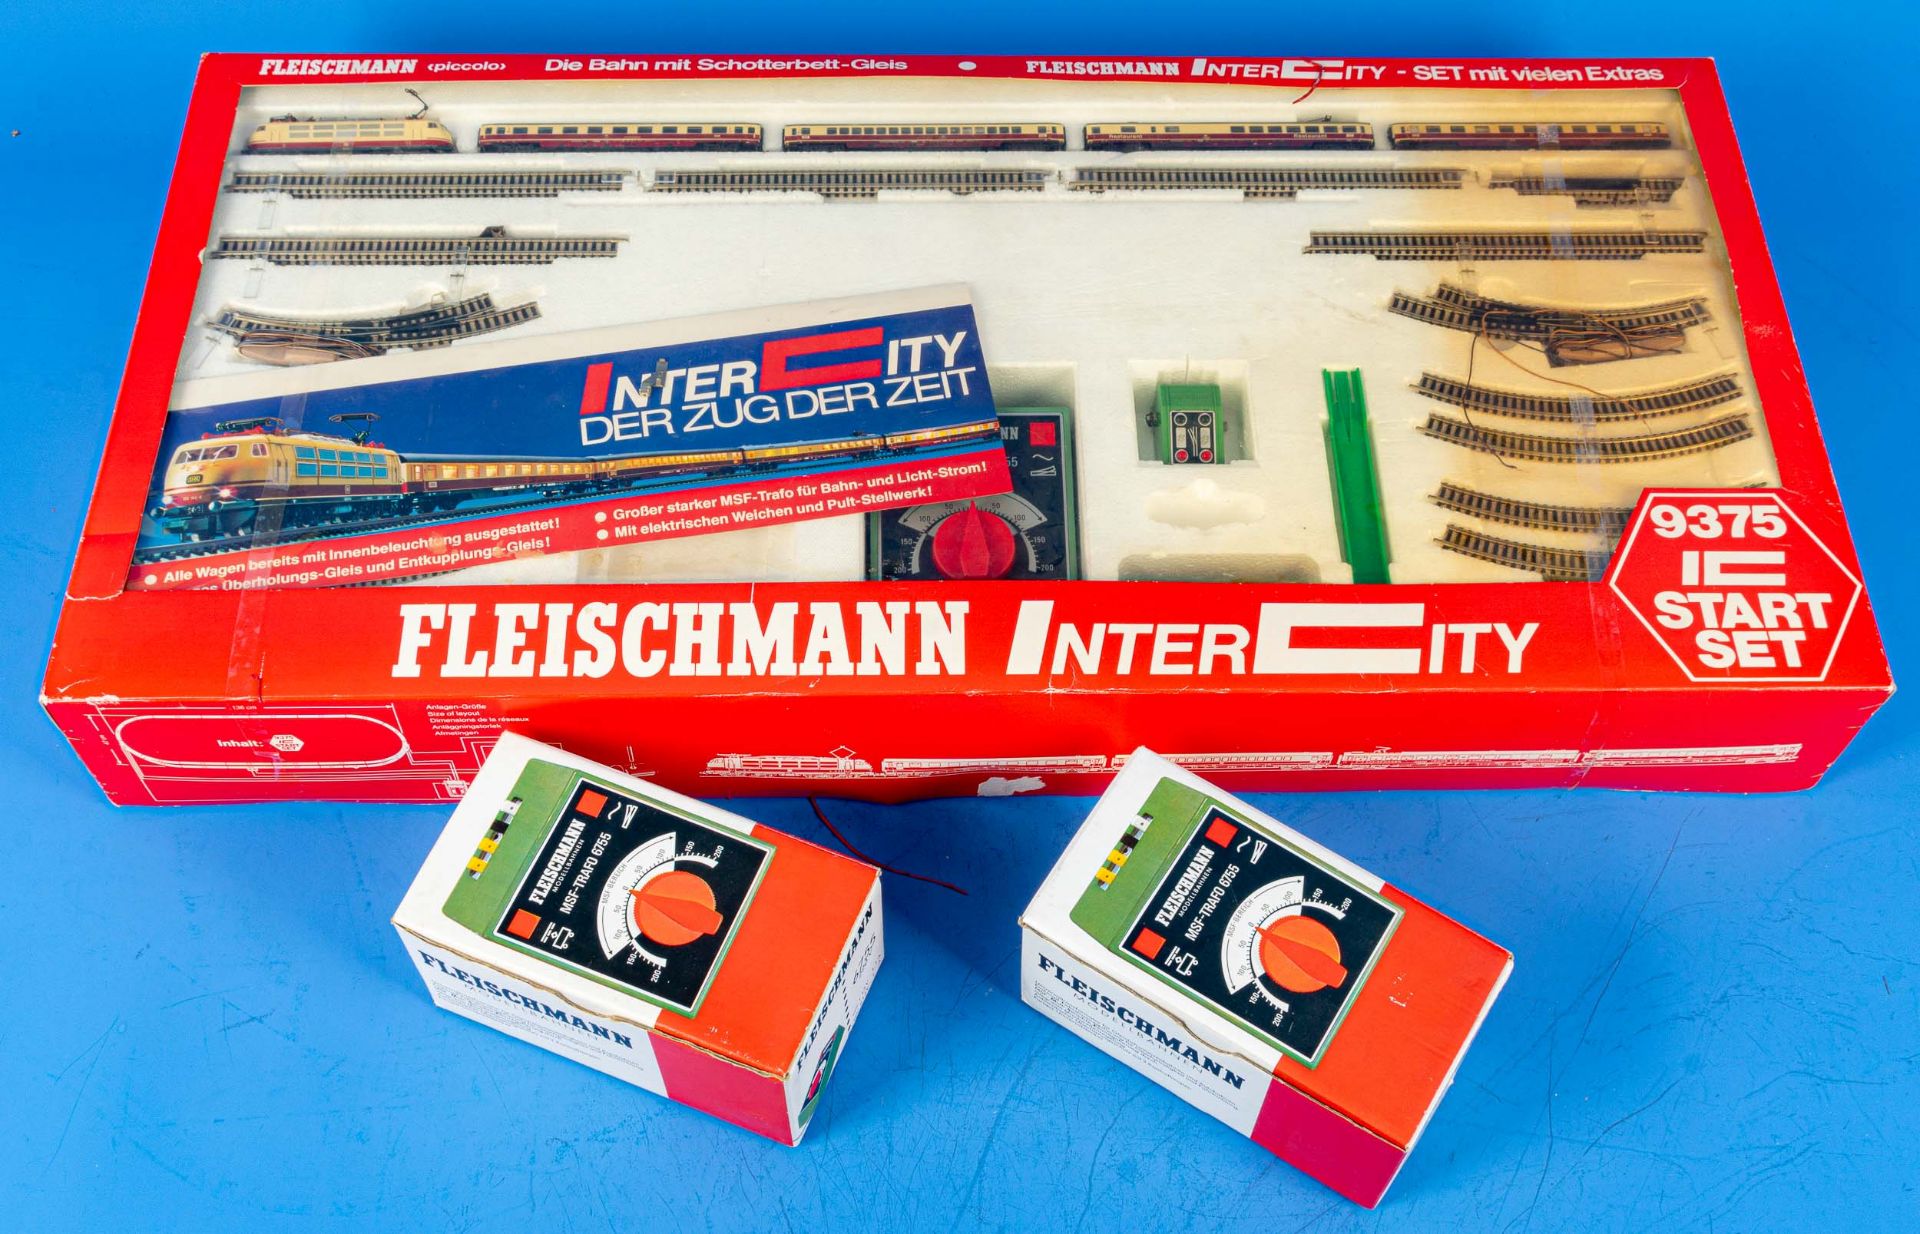 Fleischmann Intercity 9375 Starter-Set in orig. Kartonage sowie 2 x MSF-Trafo 6675, ebenfalls ins o